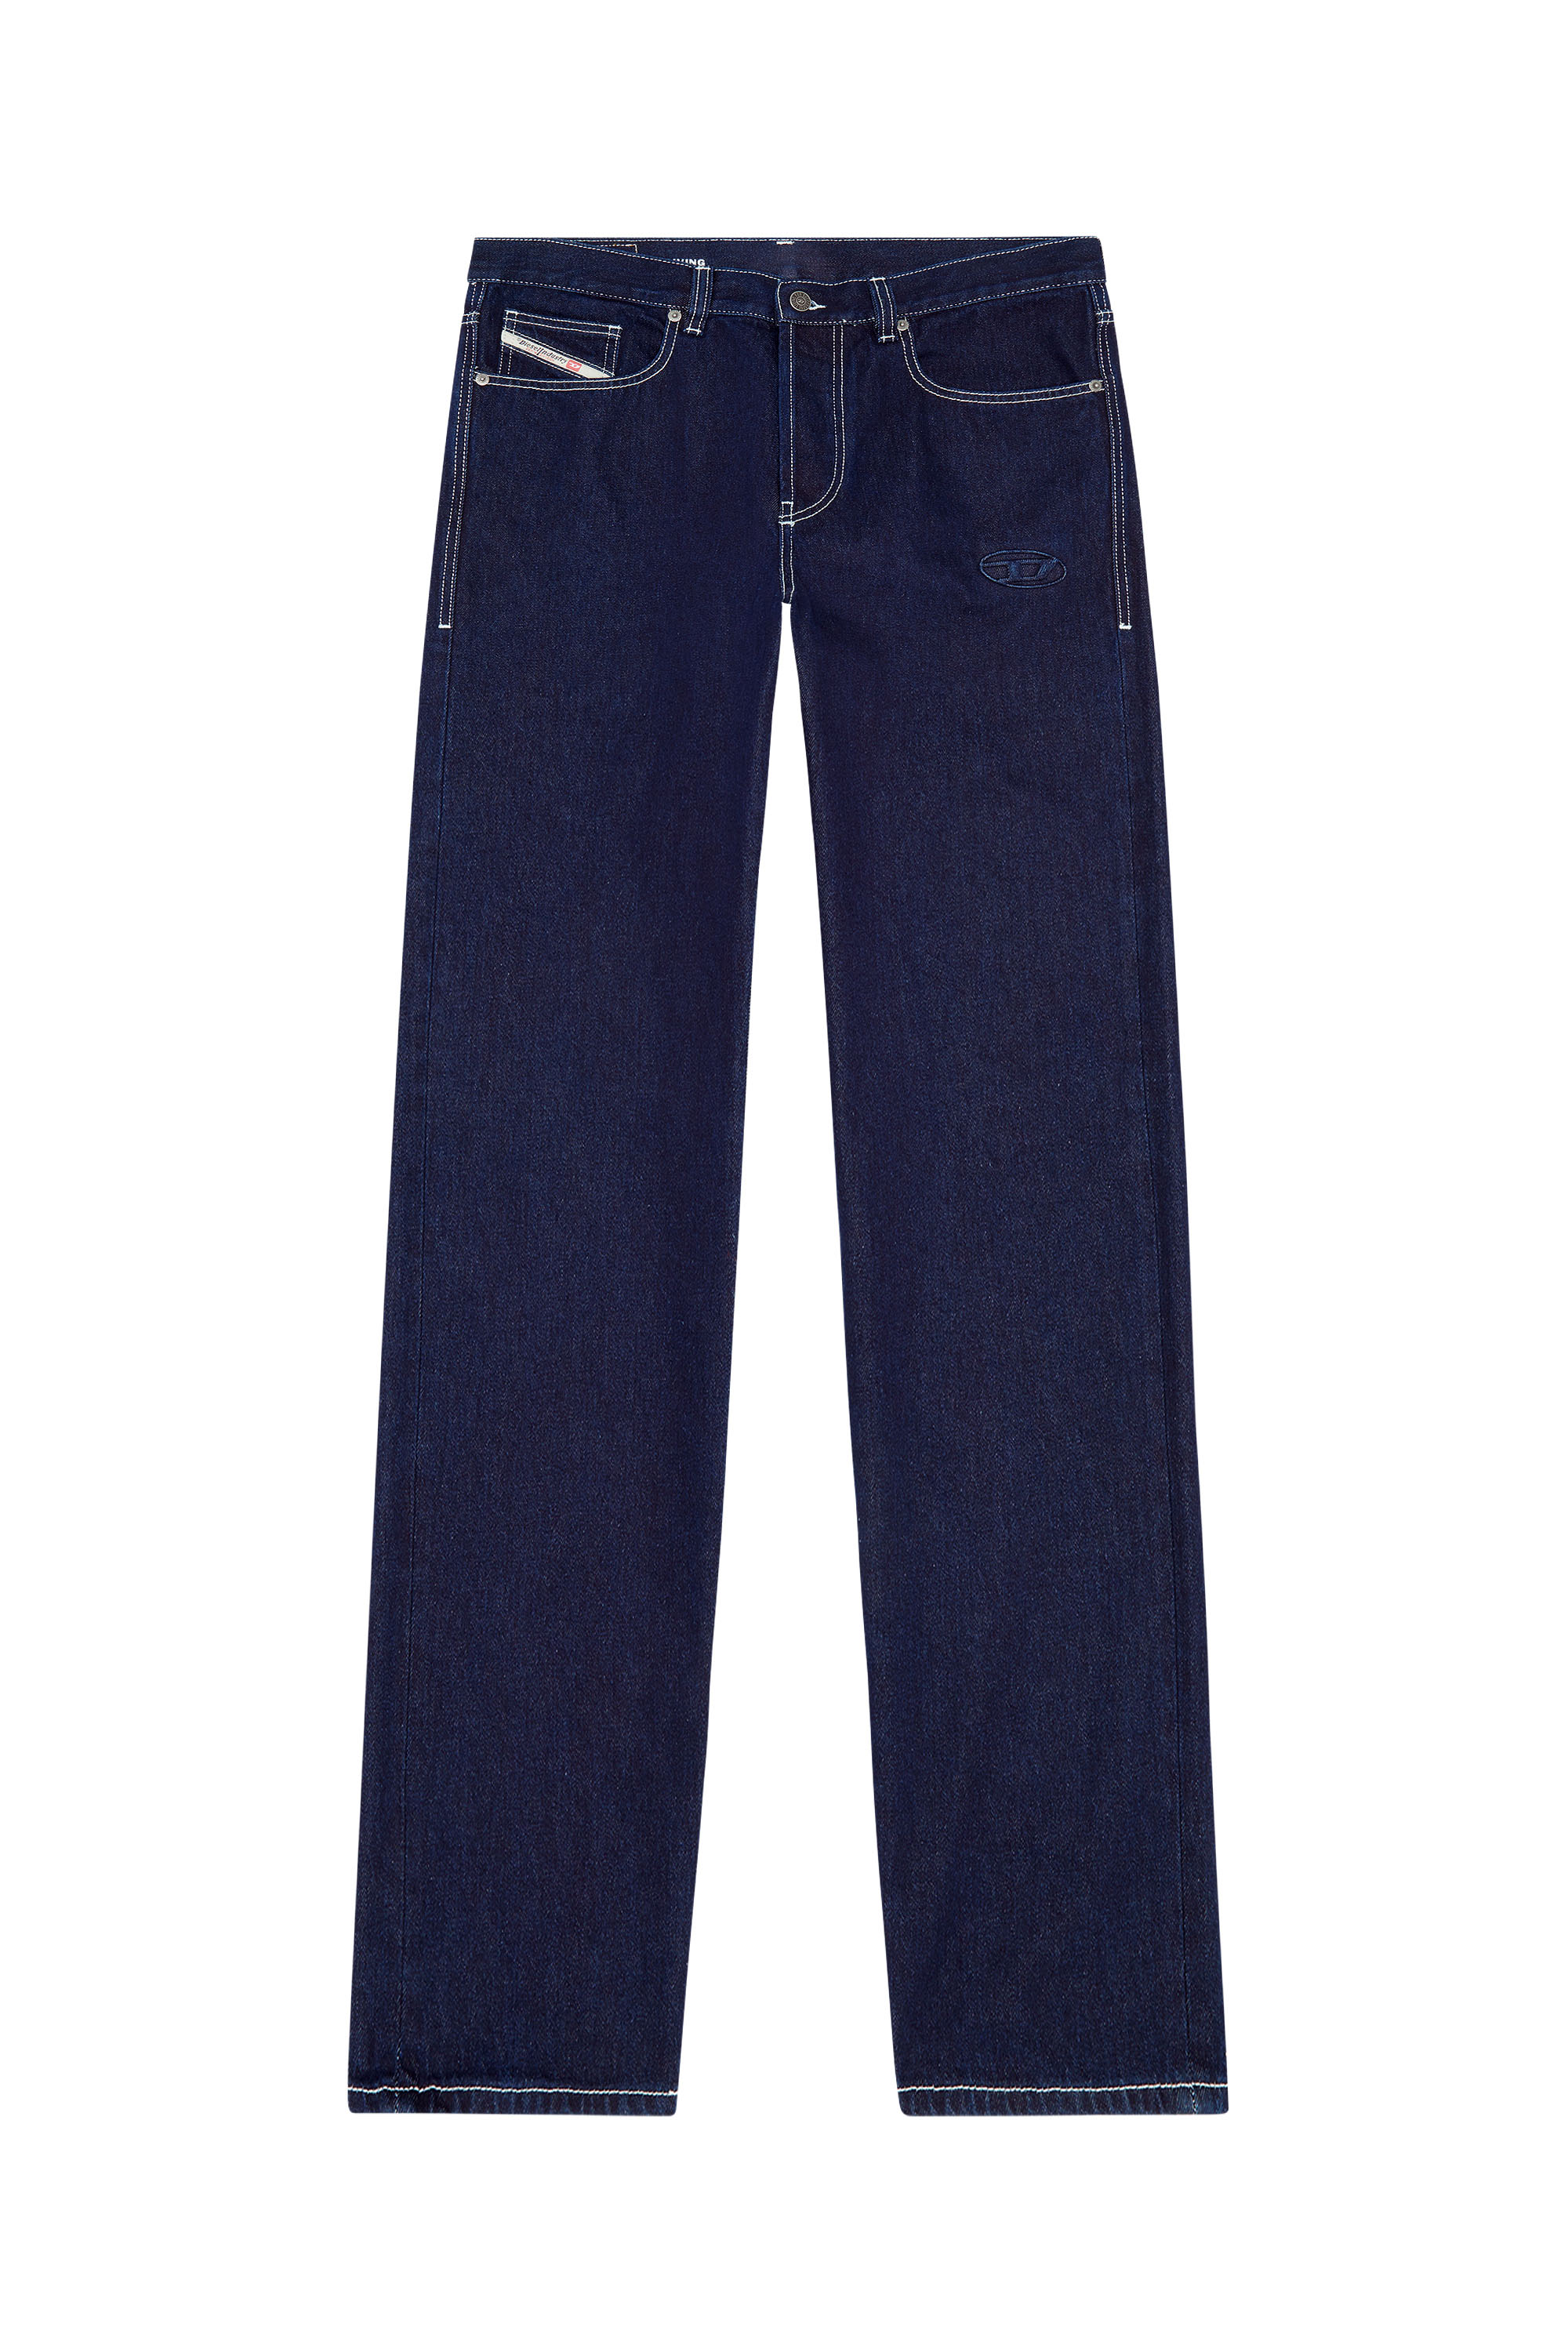 2010 D-Macs 09F19 Straight Jeans, Dark Blue